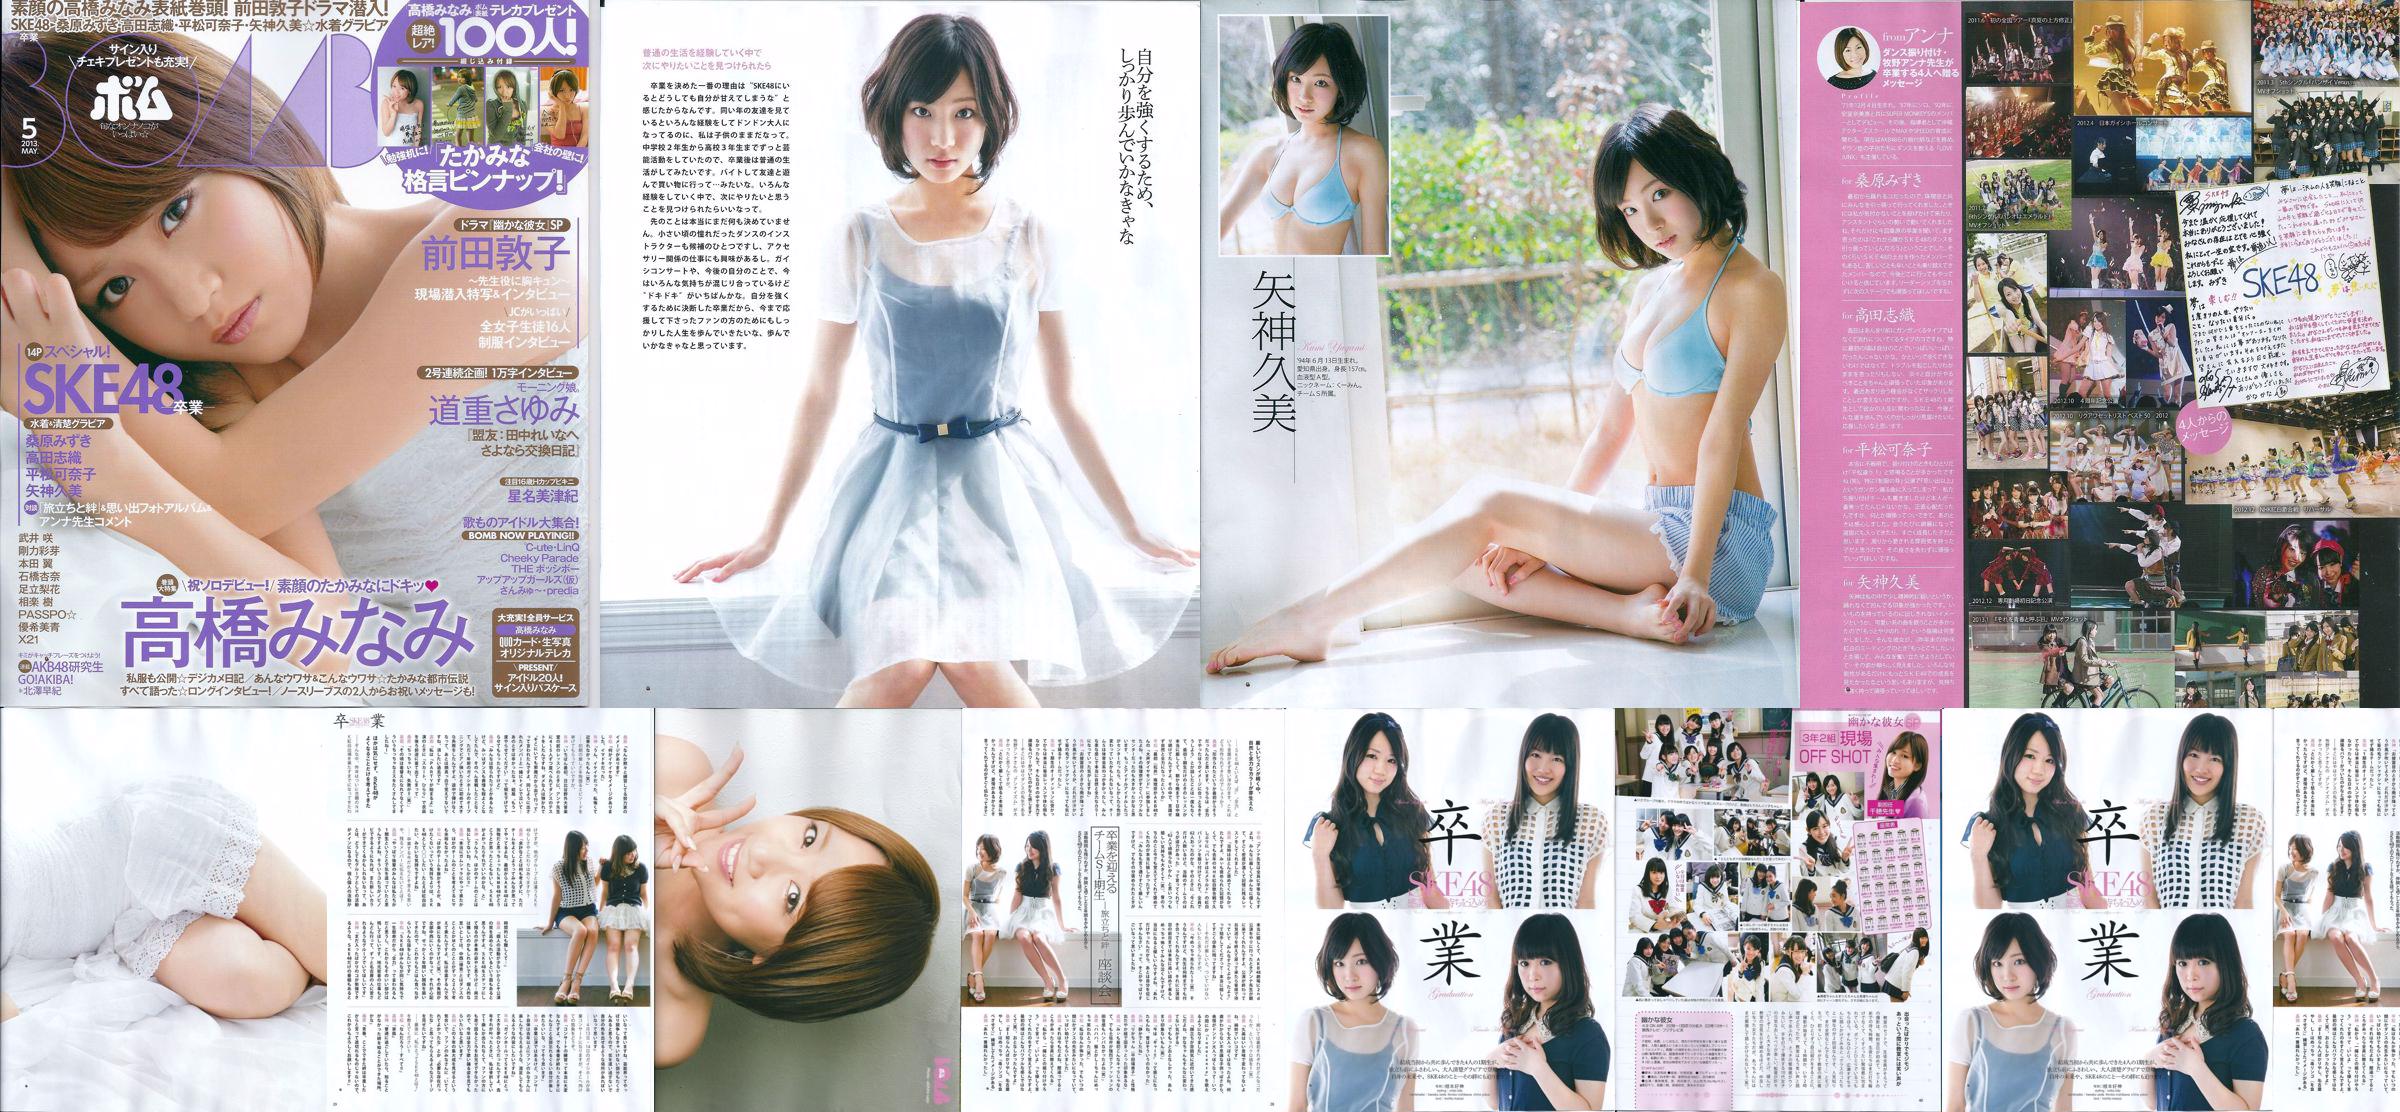 [Bomb Magazine] 2013 No.05 Kumi Yagami Minami Takahashi Atsuko Maeda Foto No.101309 Página 9